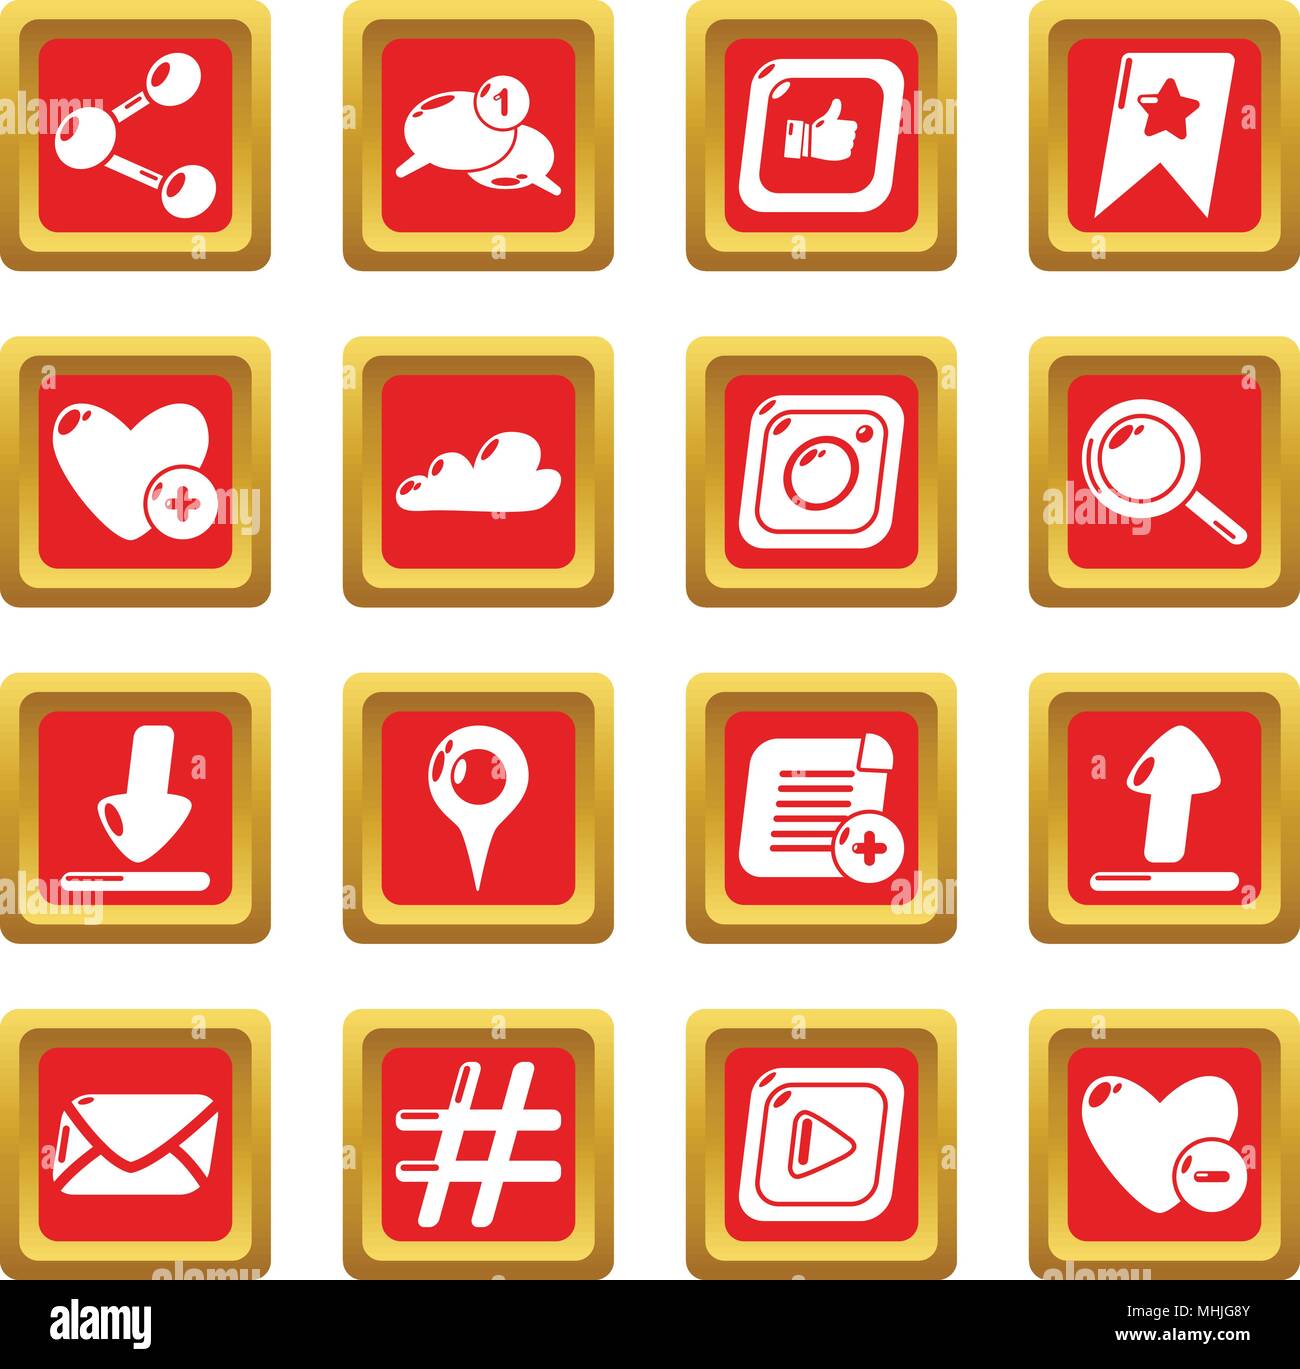 Réseau social icons set carré rouge vector Illustration de Vecteur